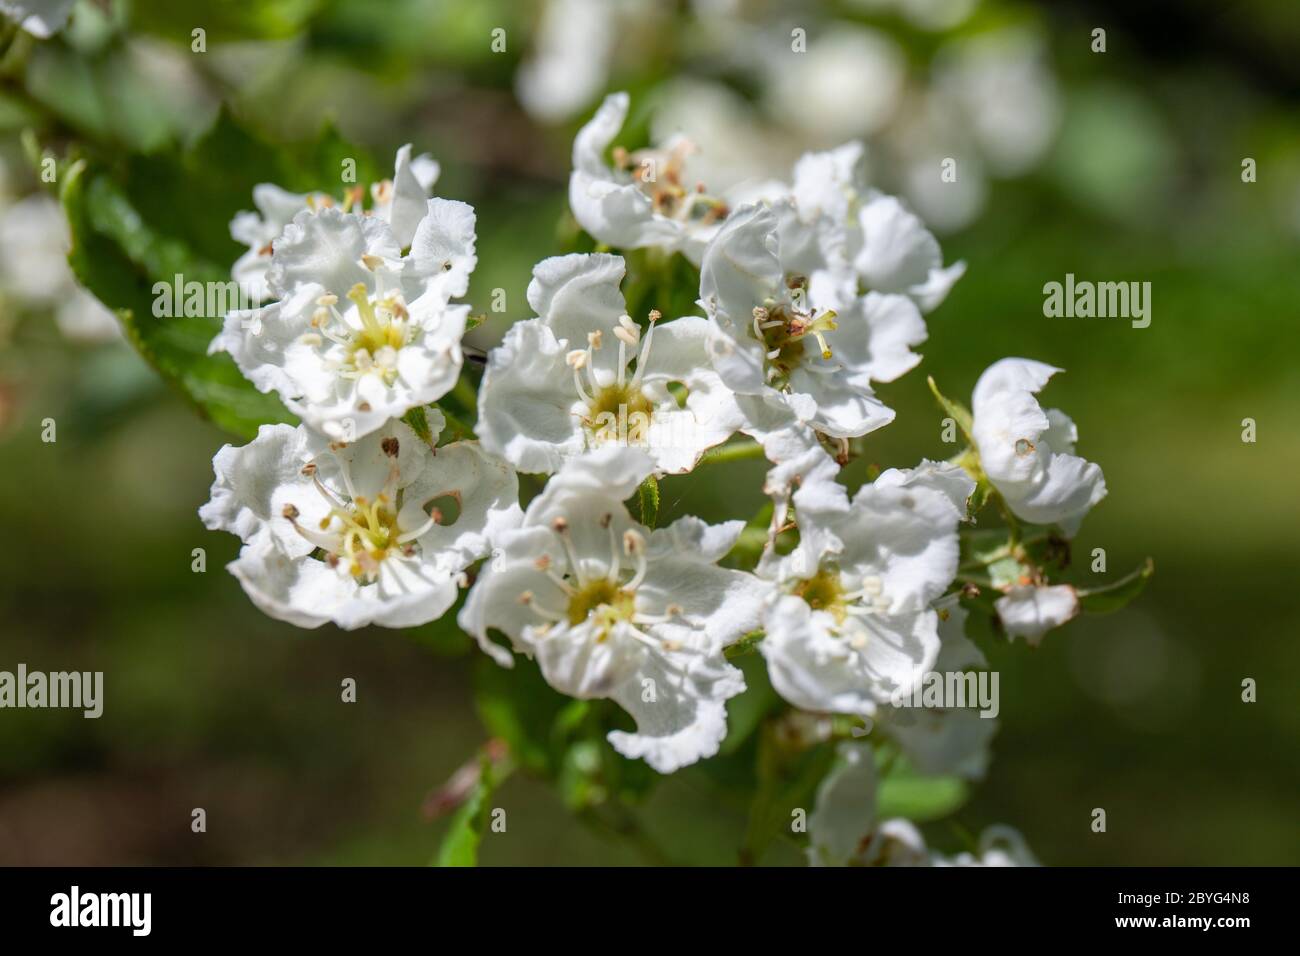 Flores blancas de espino carnoso (Crataegus suculenta), una planta también conocida como espino suculento o espino de berza de fruto redondo Foto de stock